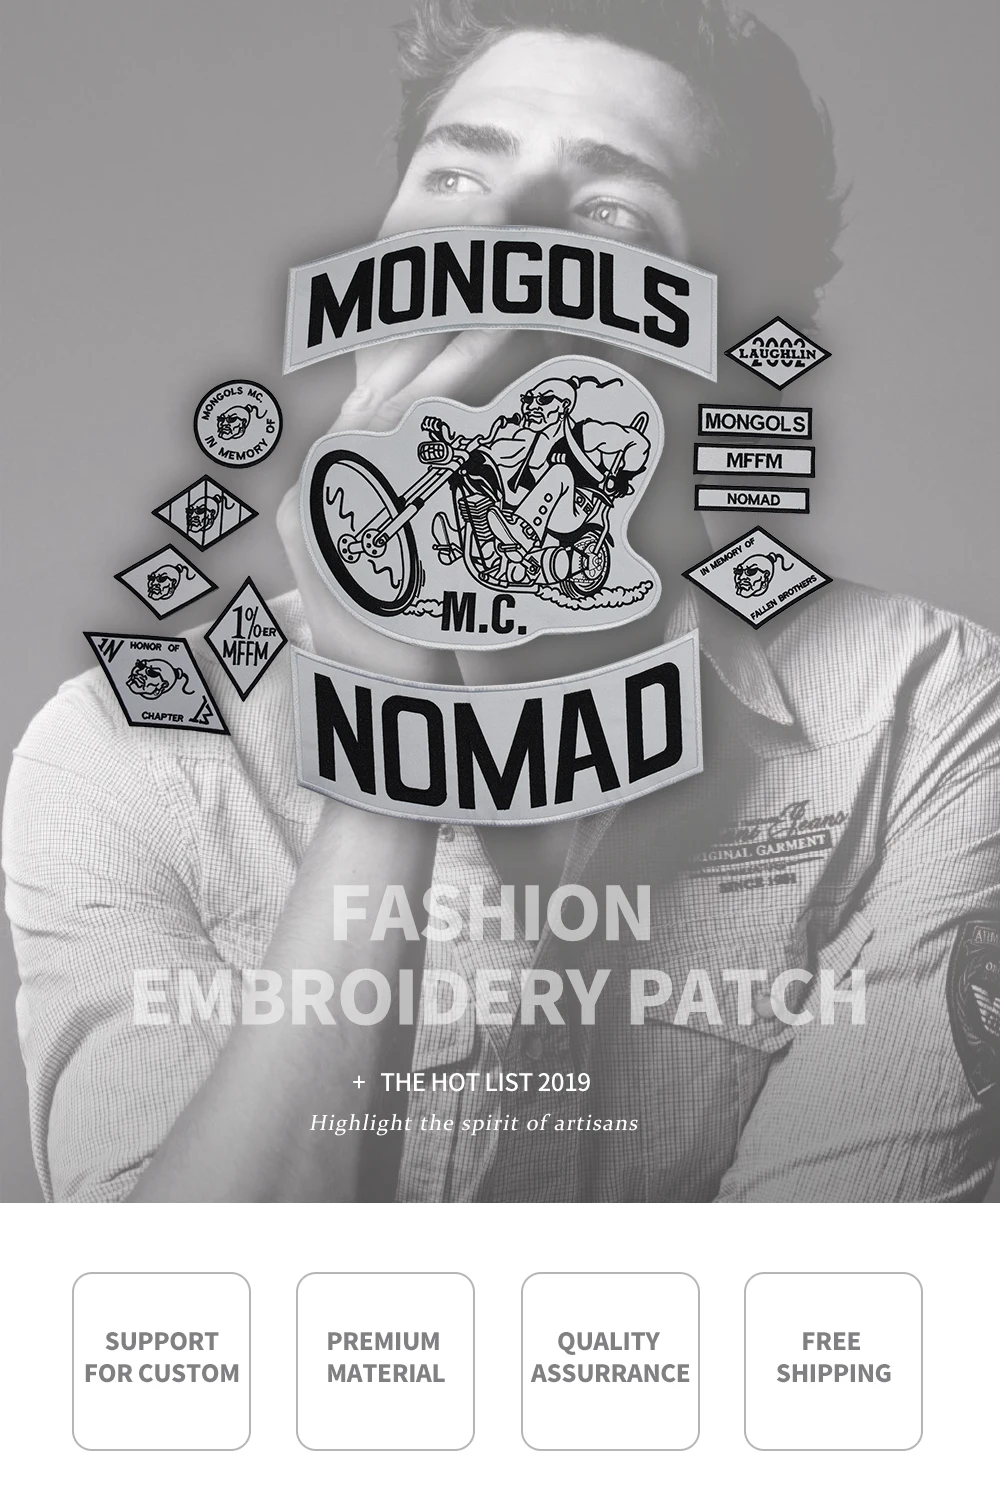 Mongols патч Nomad MC куртка набор патчей Байкер большая задняя мотоциклетная куртка одежда Rider значки нация MFFM аппликации наклейка